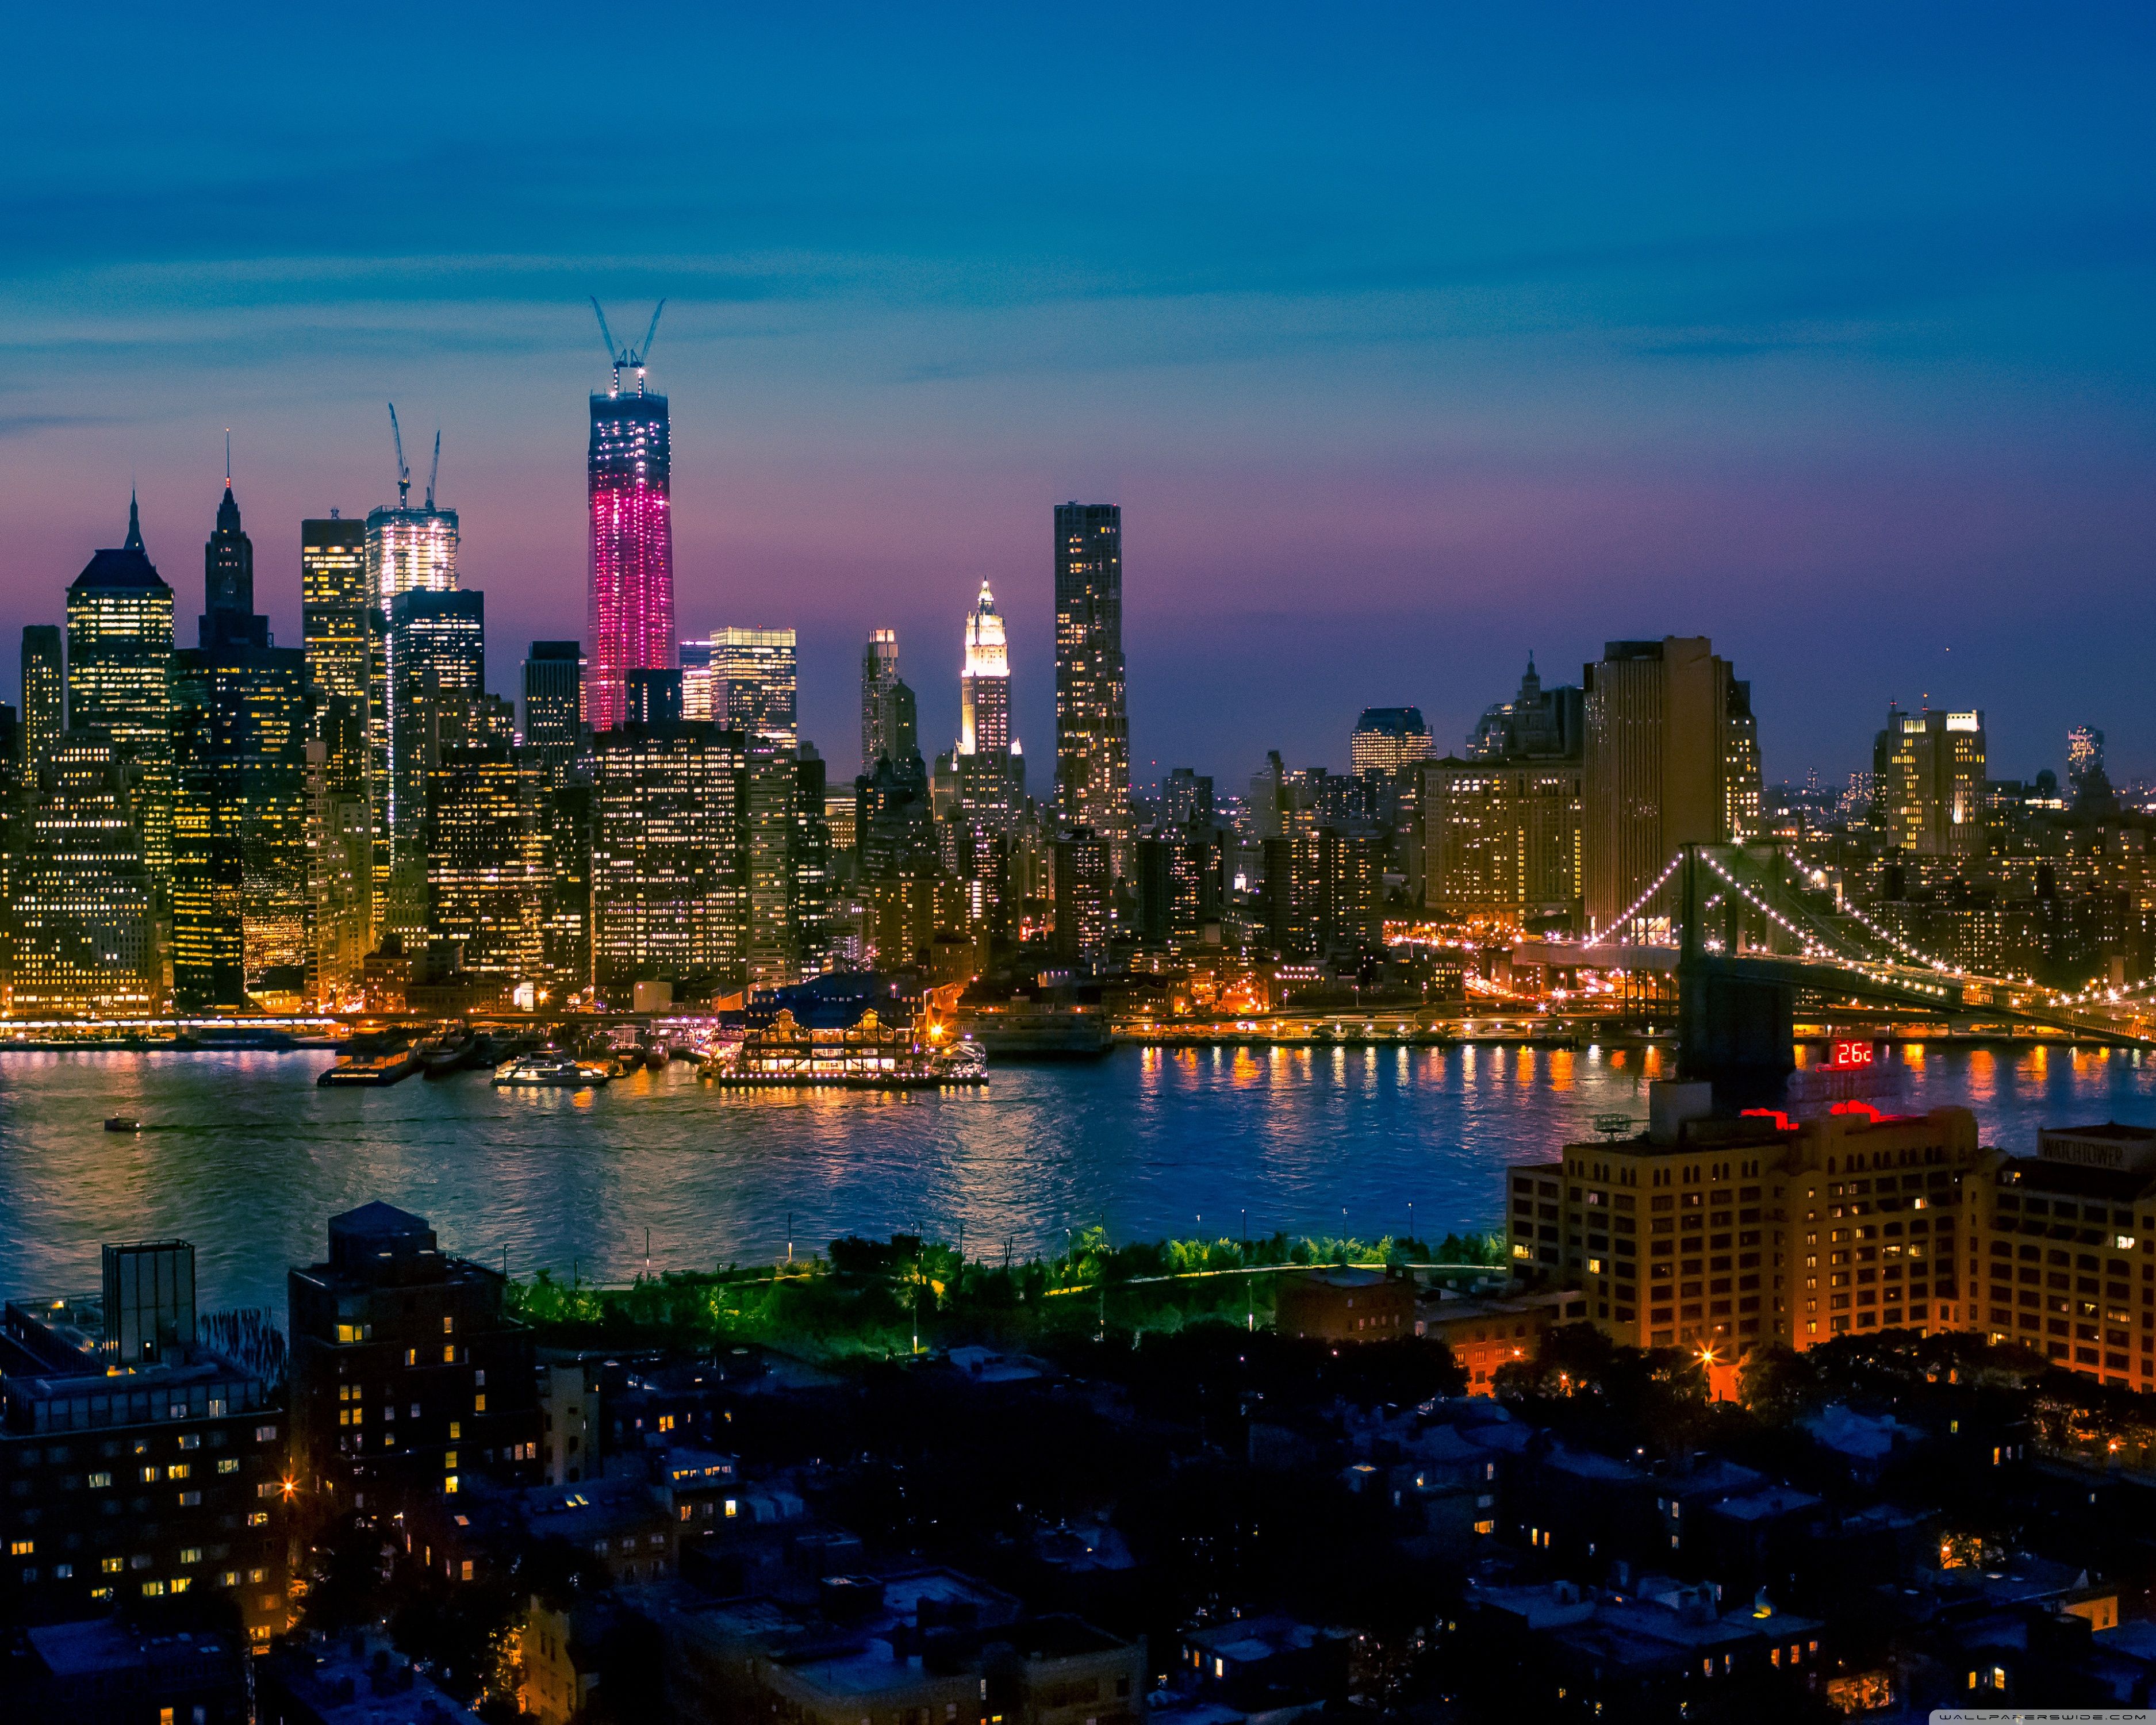 New York City At Night Lights ❤ 4K HD Desktop Wallpaper for 4K